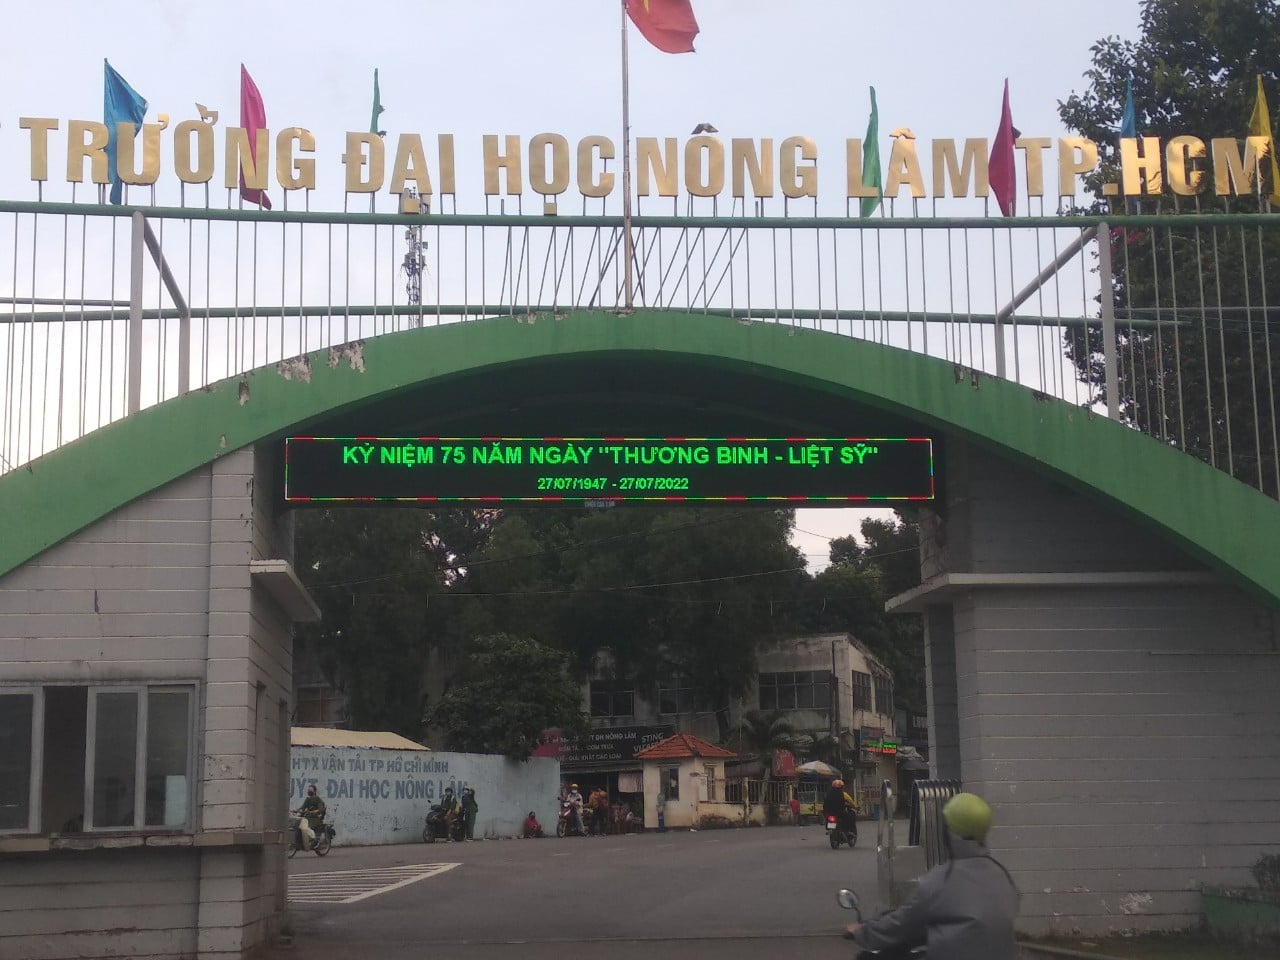 Công ty Cổ phần Tập đoàn LephongMoving trao tặng 70 ghế đá cho sinh viên trường ĐH Nông Lâm Tp. Hồ Chí Minh